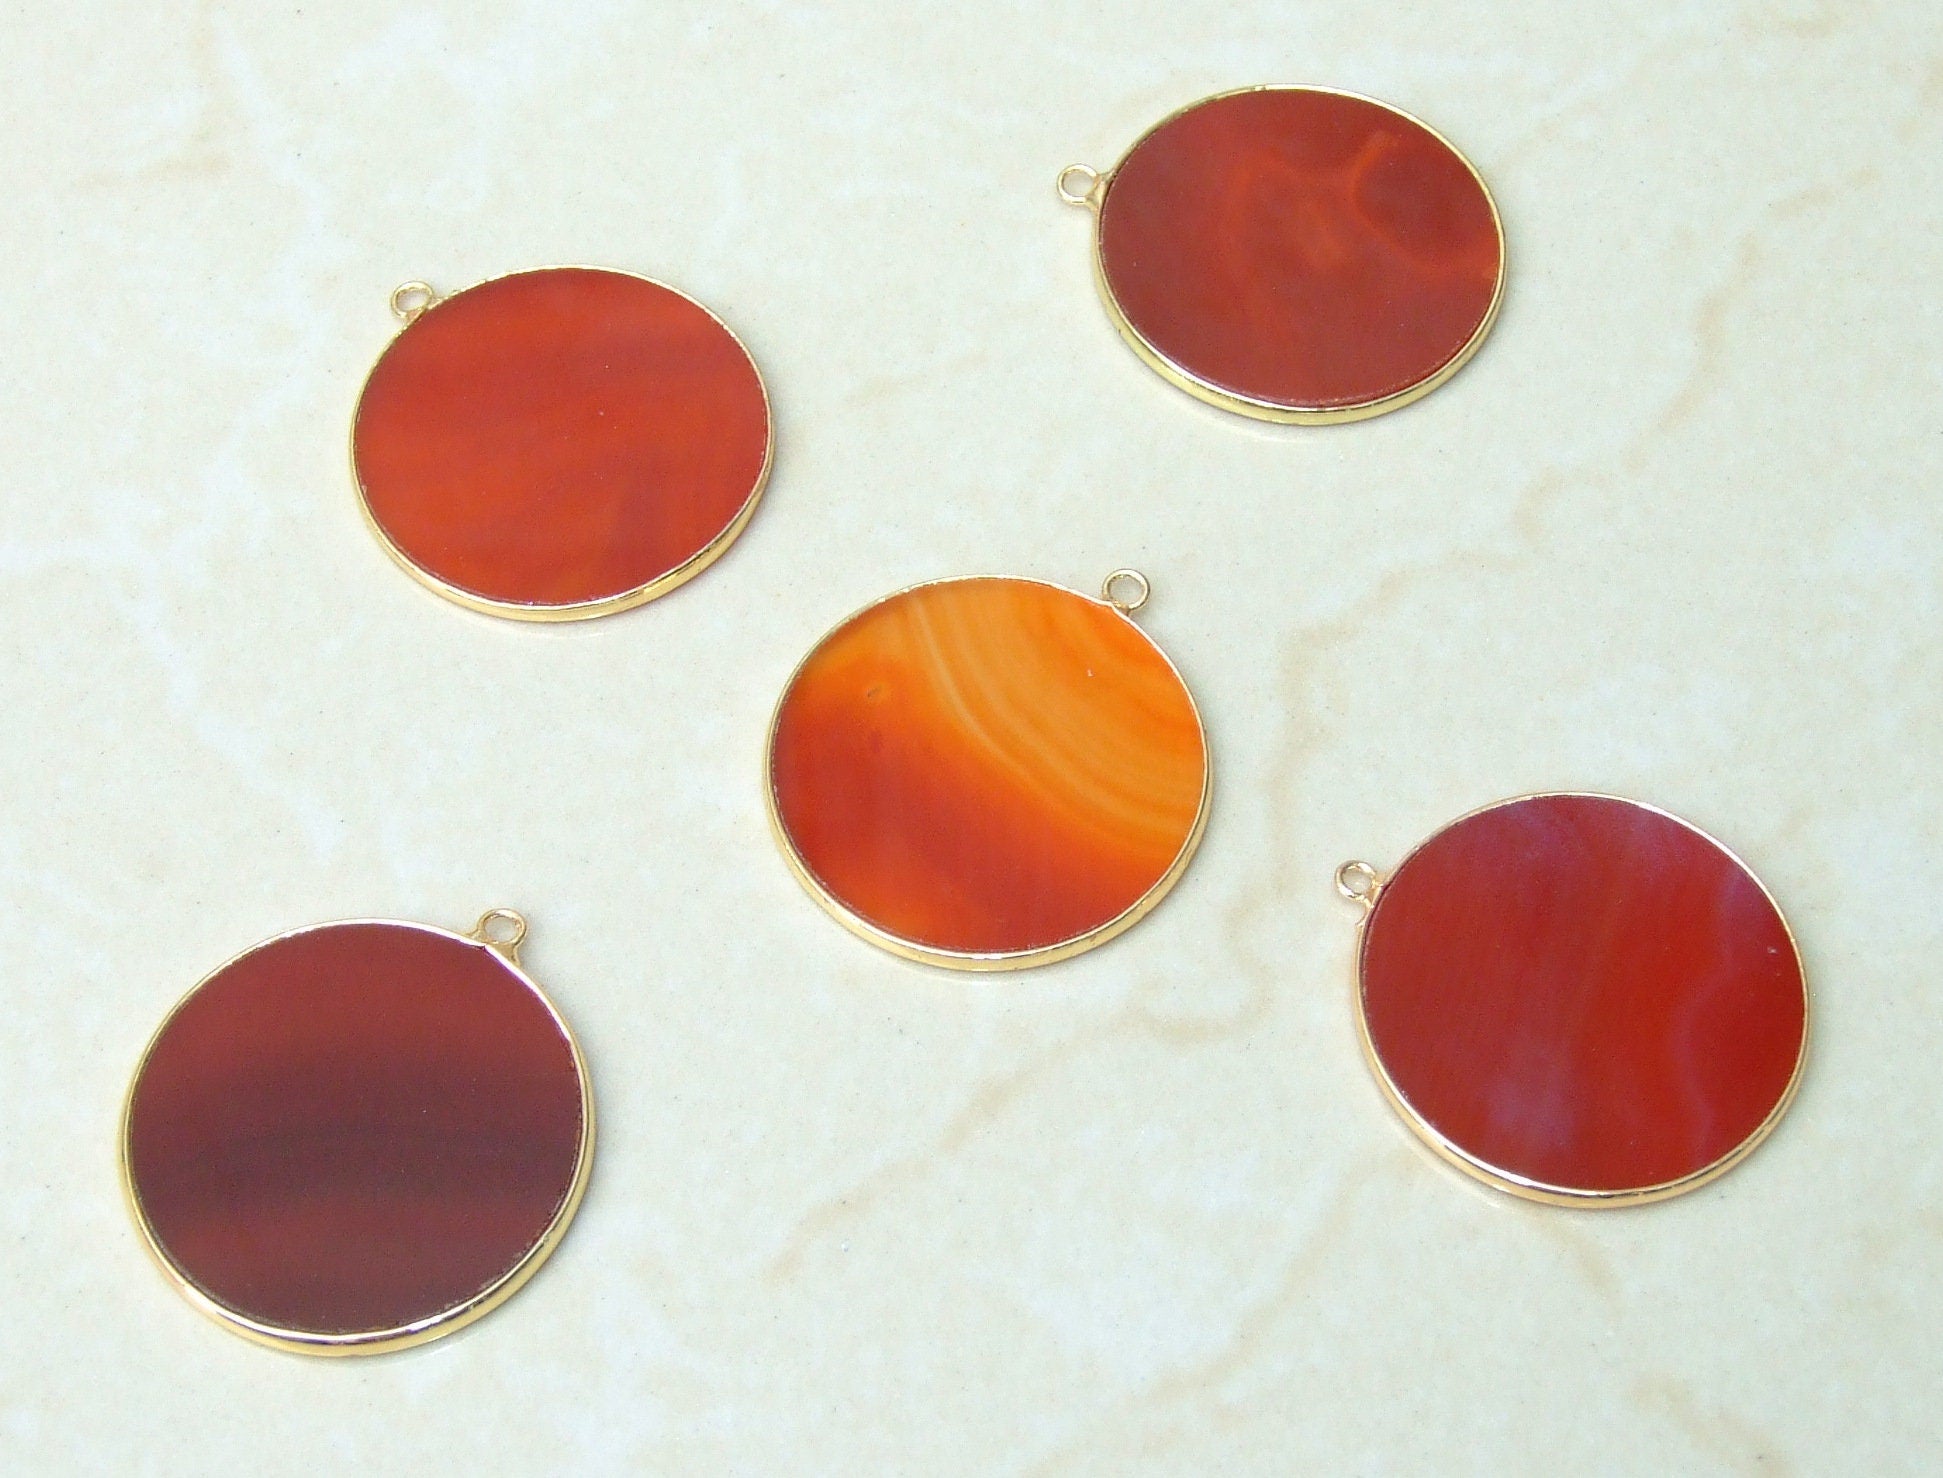 Carnelian Pendant, Gemstone Pendant, Thin, Slice Pendant, Polished, Round, Gold Bezel, Jewelry Stones, Necklace Pendant, 30mm